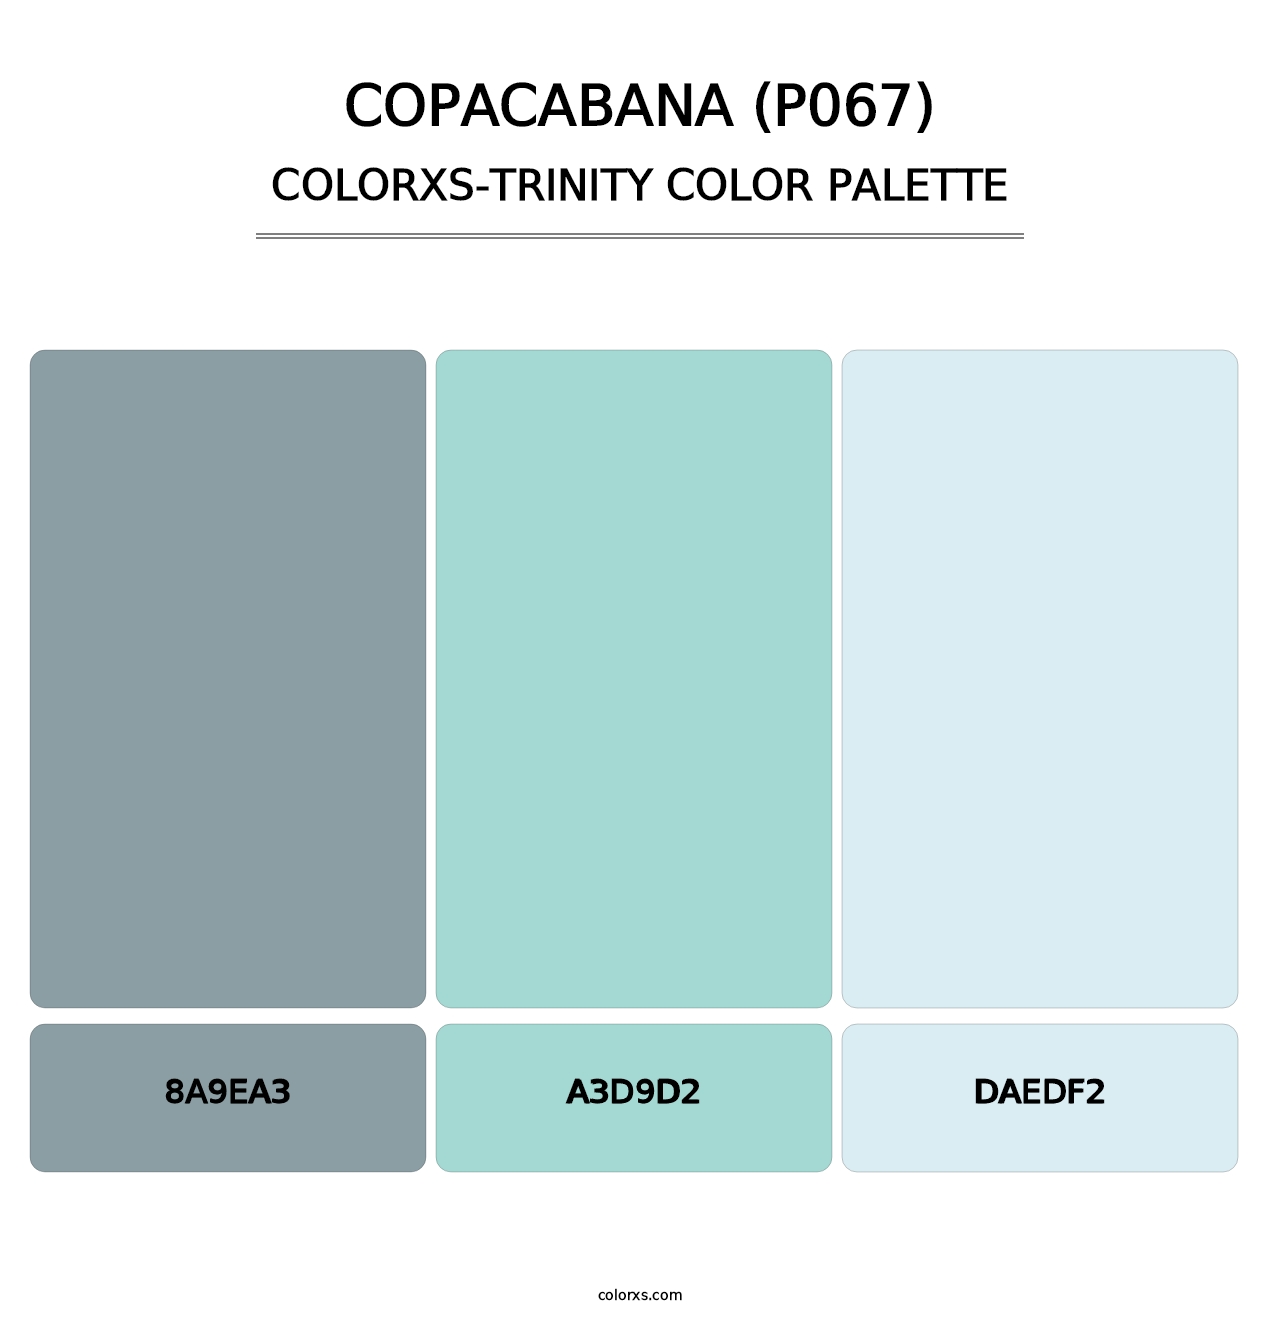 Copacabana (P067) - Colorxs Trinity Palette